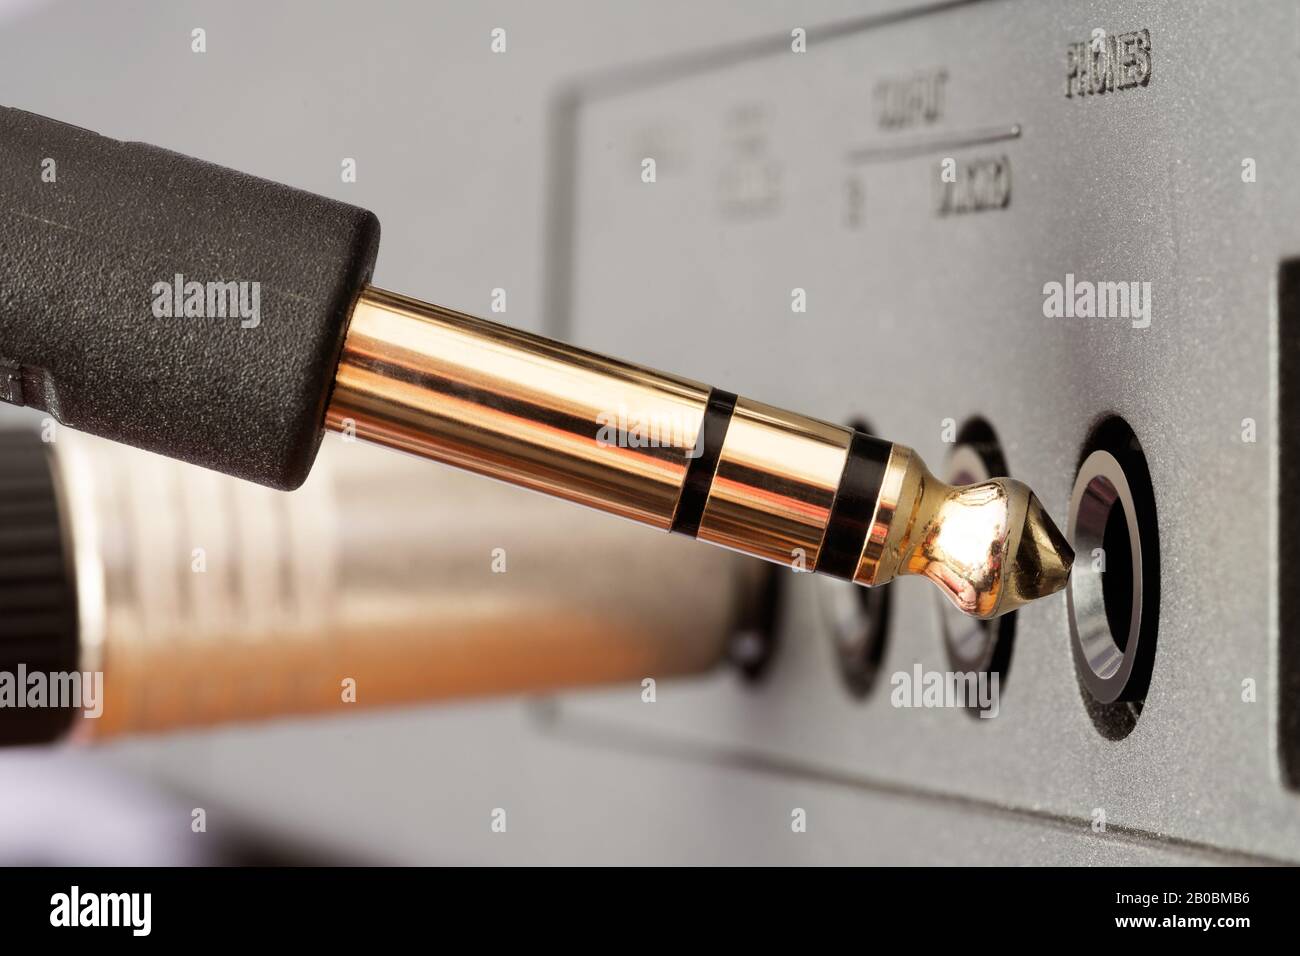 Nahaufnahme des Audio-Anschlusses der goldenen TRS-Telefonbuchse, der an die Buchse des Audiogeräts angeschlossen wird. Musik, Audio, Hi-Fi, Konnektivität und Tonwiedergabe. Stockfoto